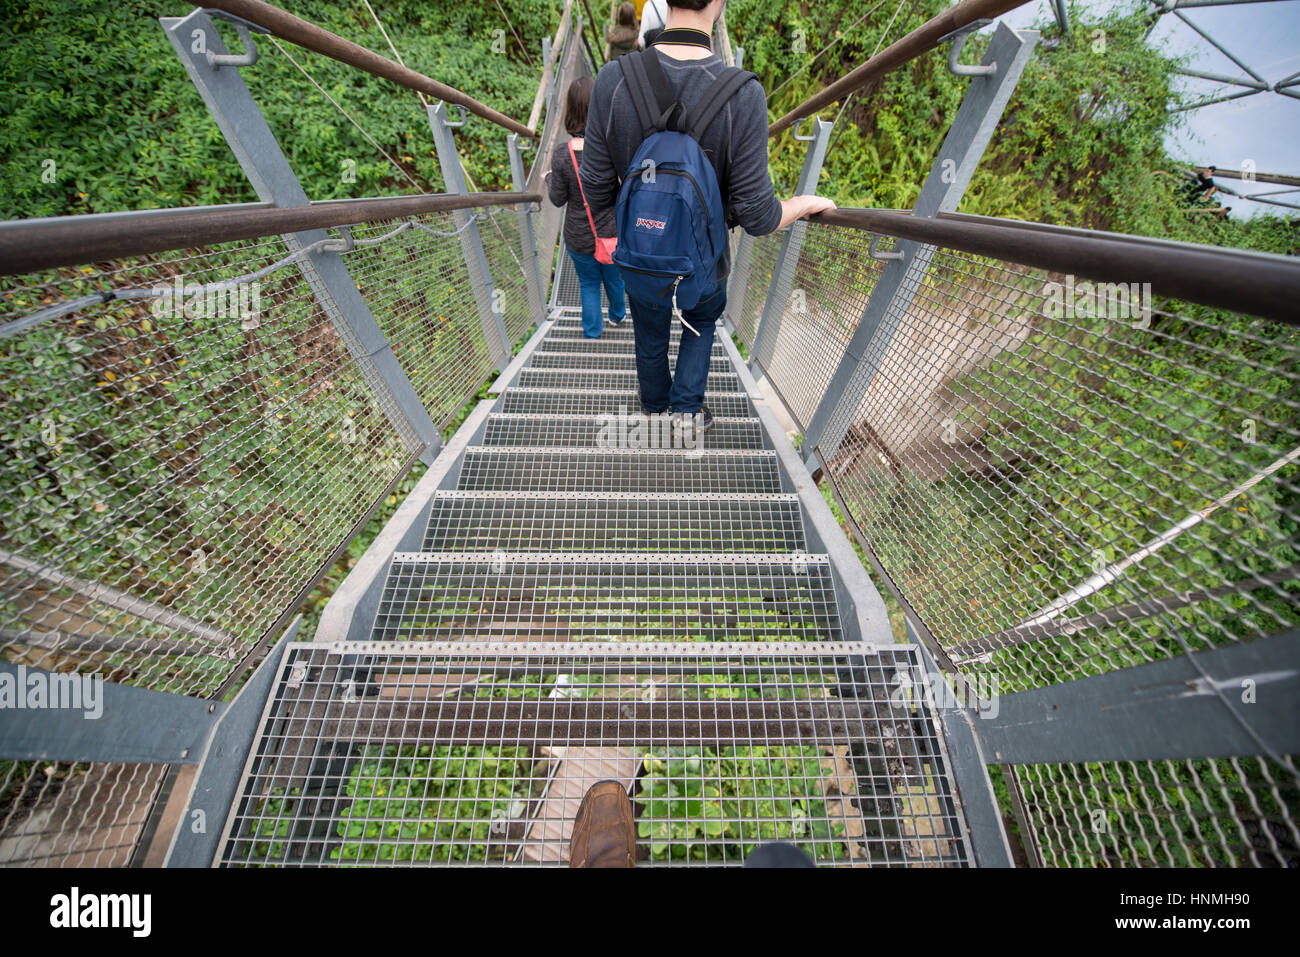 Lookout Platform, Rainforest Biome, Eden Project. Stock Photo